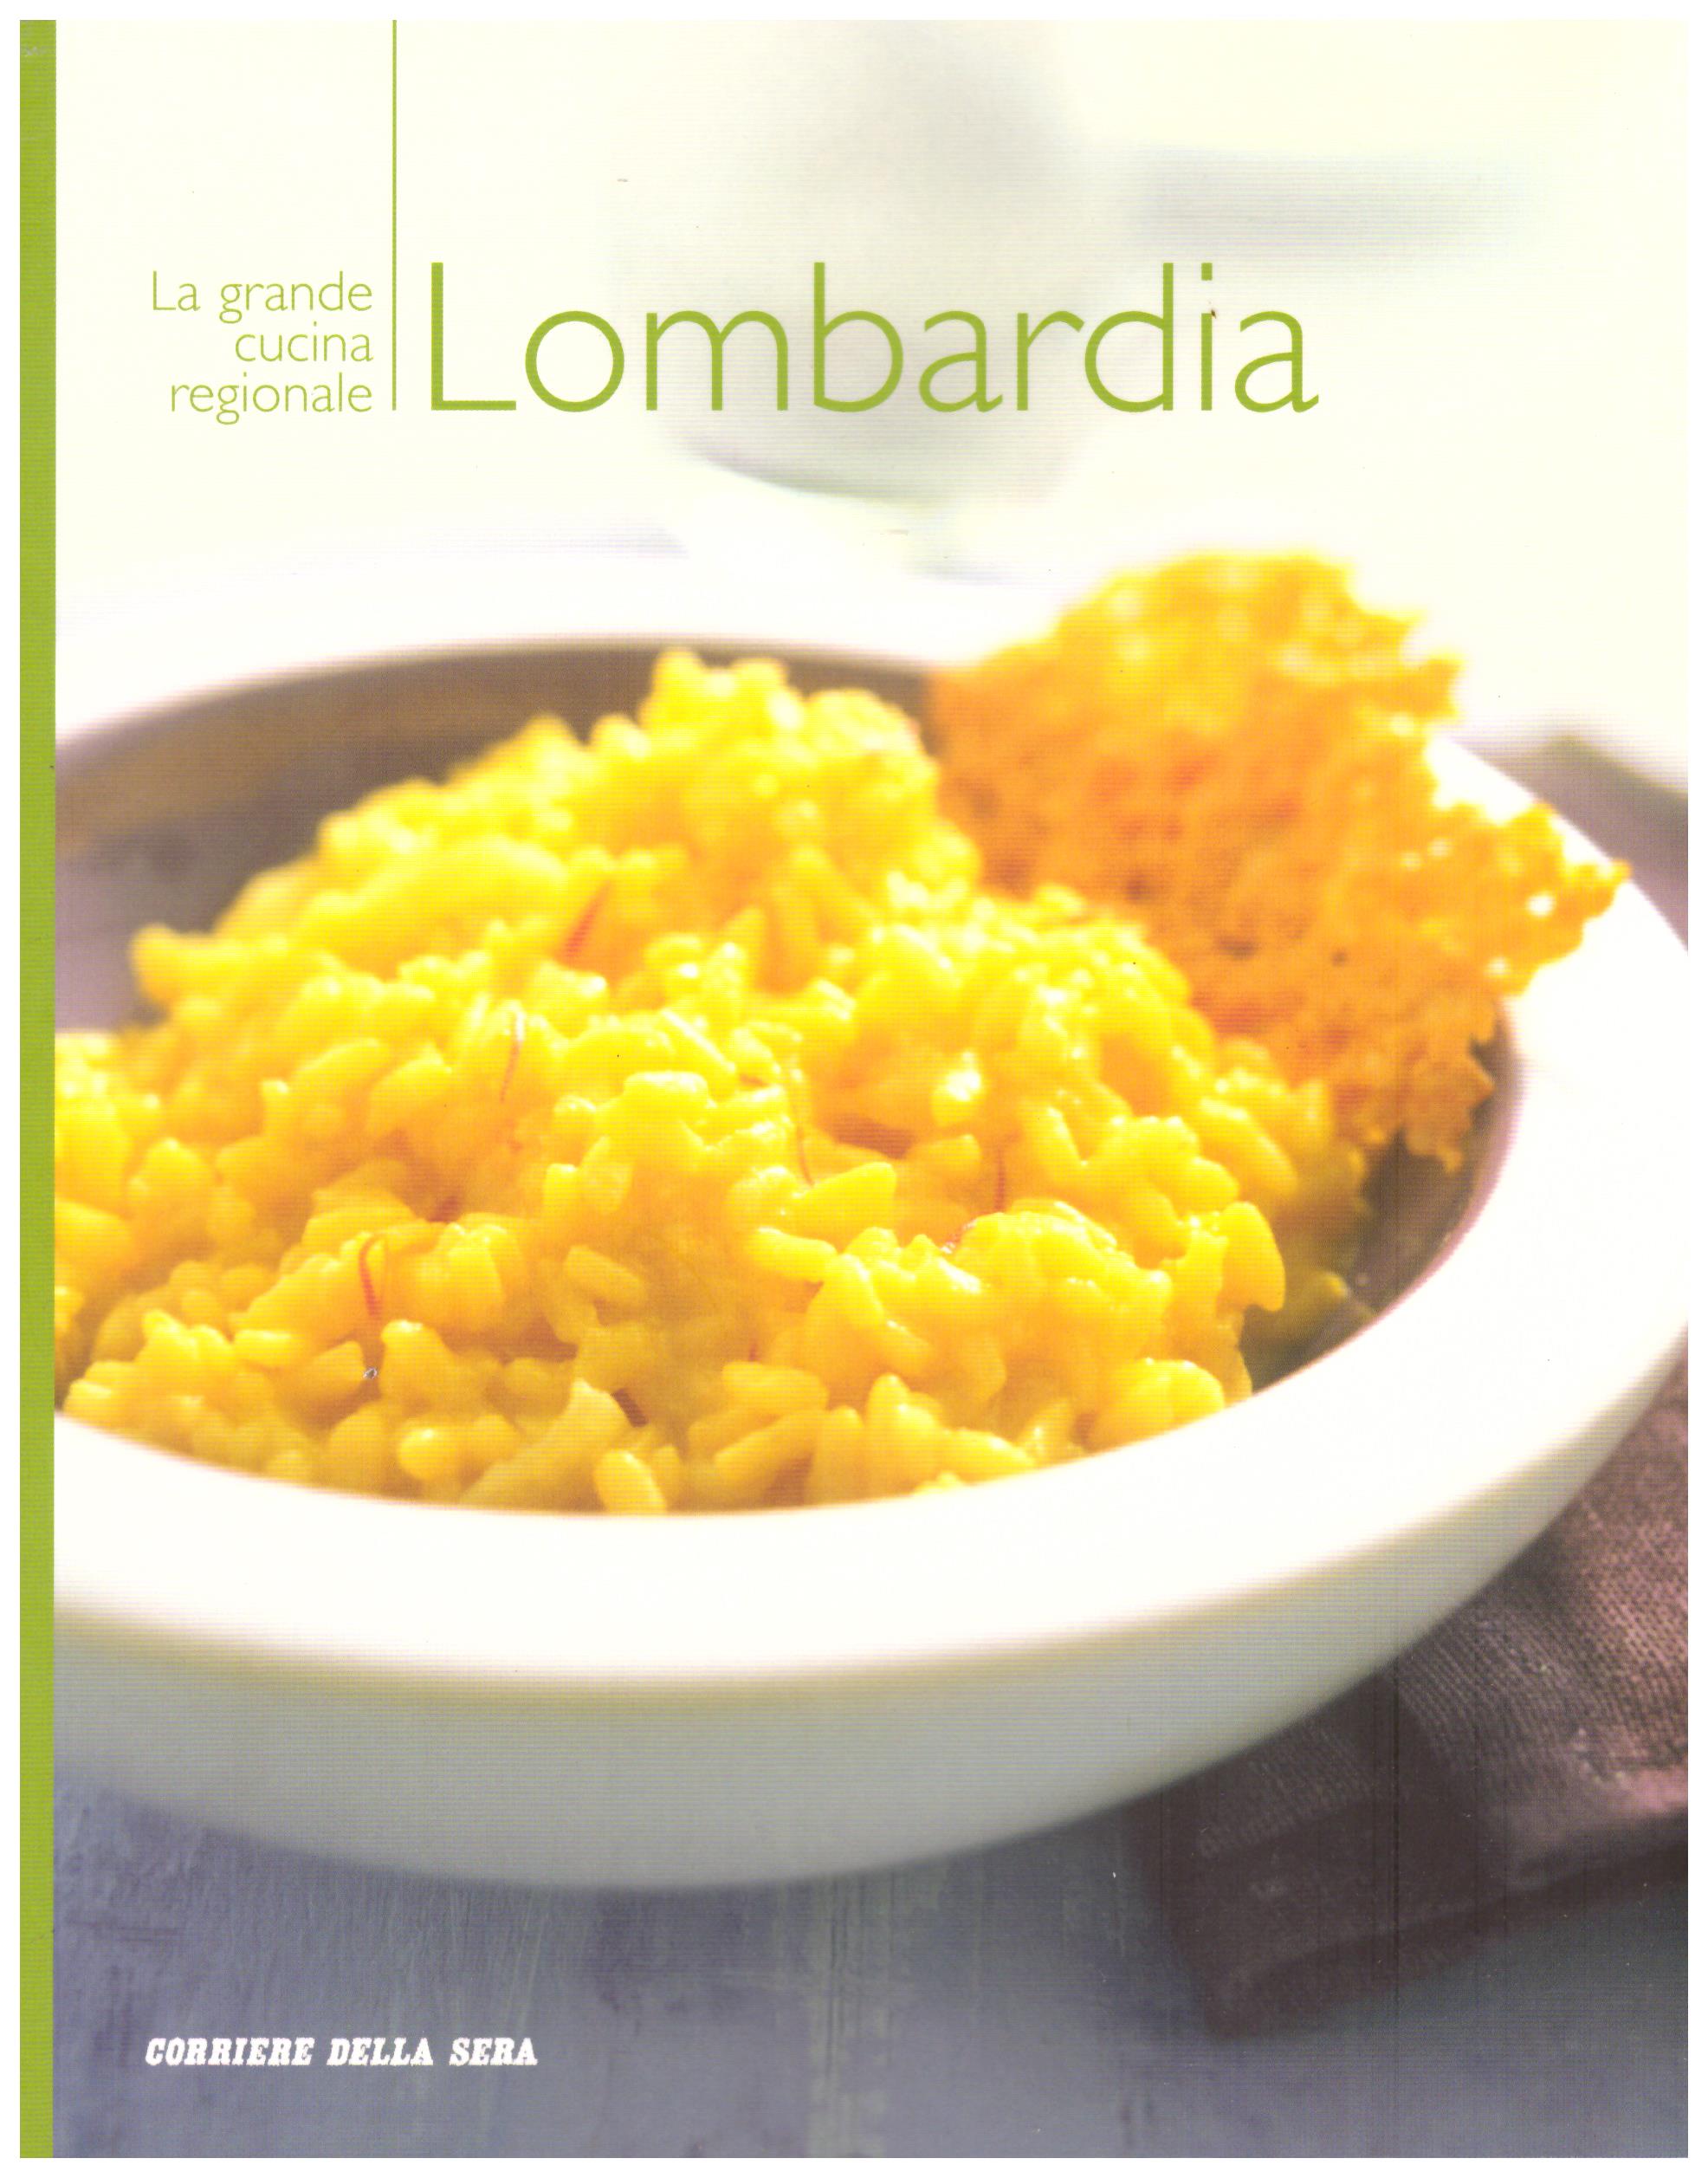 Titolo: La grande cucina regionale Lombardia Autore : AA.VV.  Editore: corriere della sera